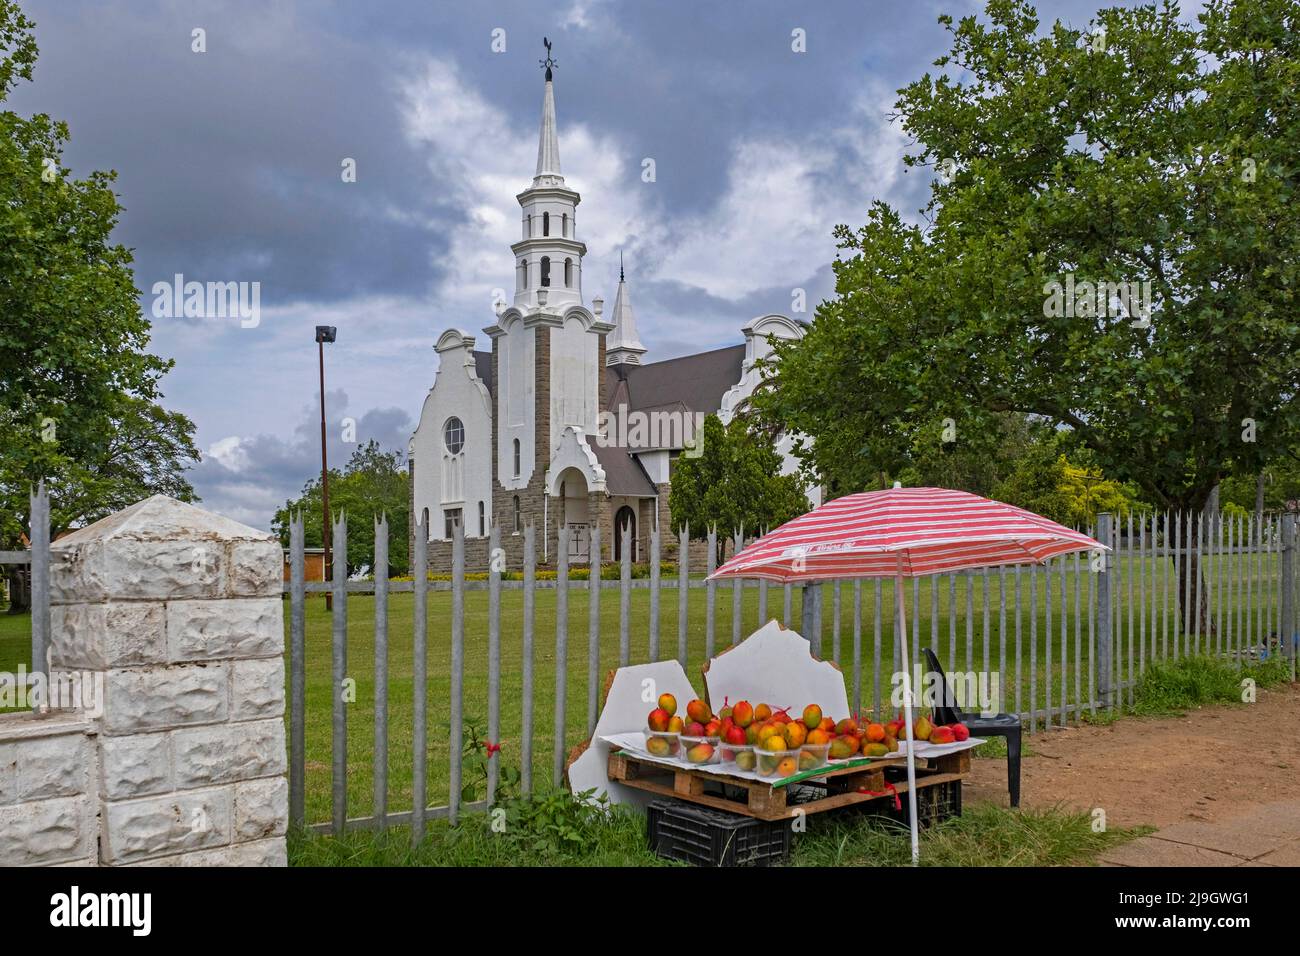 Puesto de fruta frente a la Iglesia Reformada Holandesa en la ciudad Piet Retief / Mkhondo, Gert Sibande, provincia de Mpumalanga, Sudáfrica Foto de stock